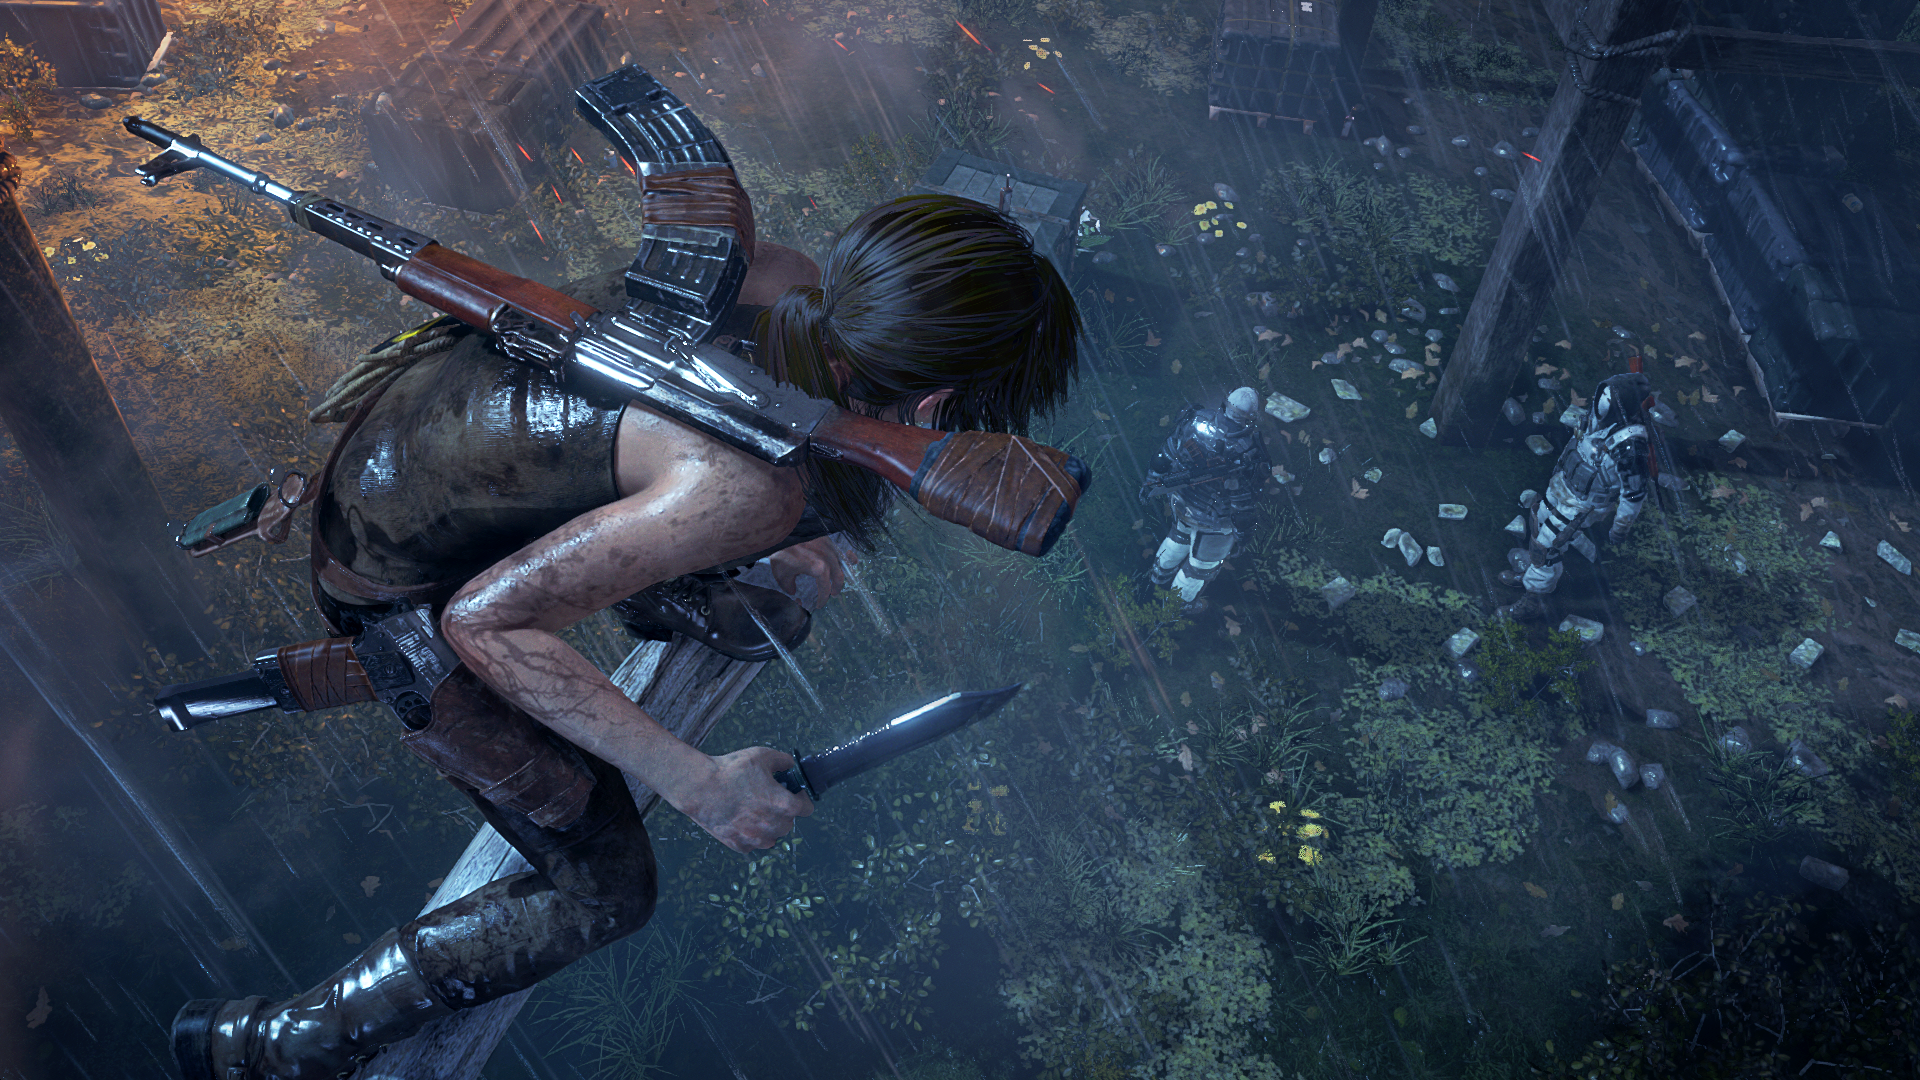 Immagine pubblicata in relazione al seguente contenuto: Guarda il video con 14 minuti di gameplay tratti da Rise of the Tomb Raider | Nome immagine: news23217_Rise-of-the-Tomb-Raider-Screenshot_1.png